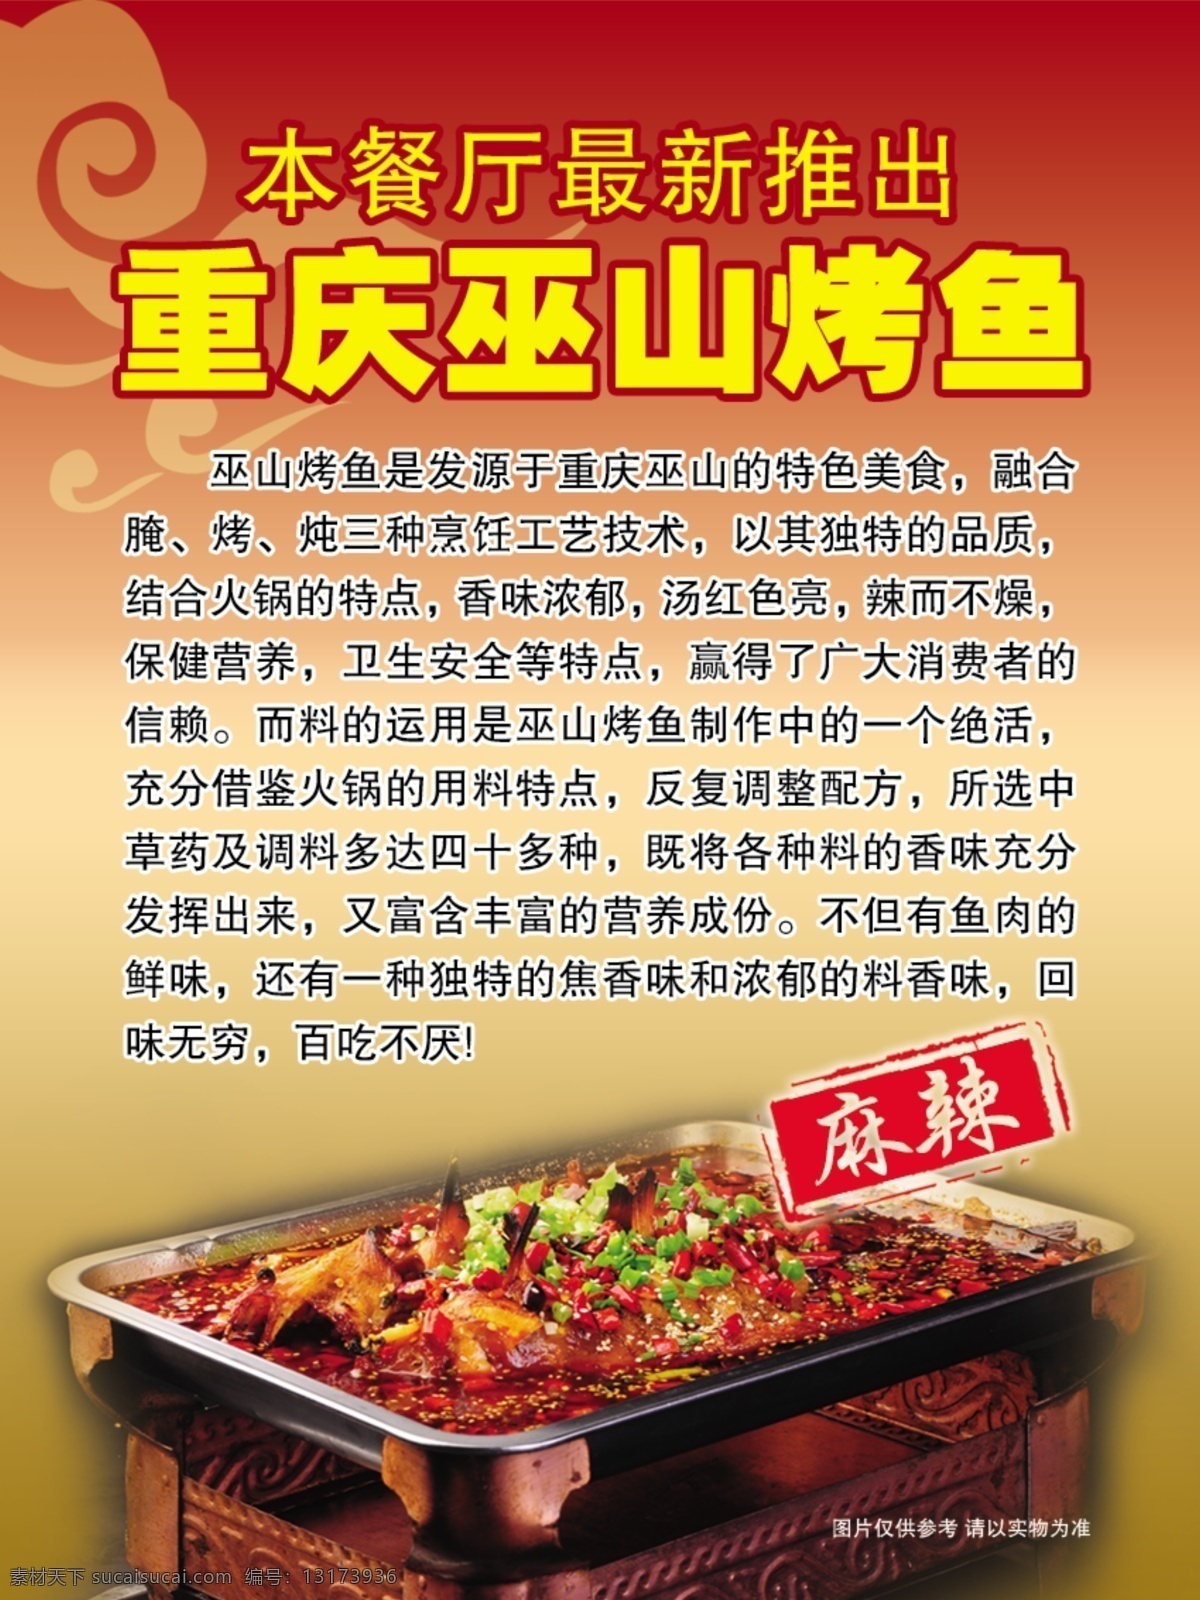 重庆 巫山 烤鱼 广告 麻辣 重庆巫山烤鱼 酒店餐厅广告 psd源文件 餐饮素材